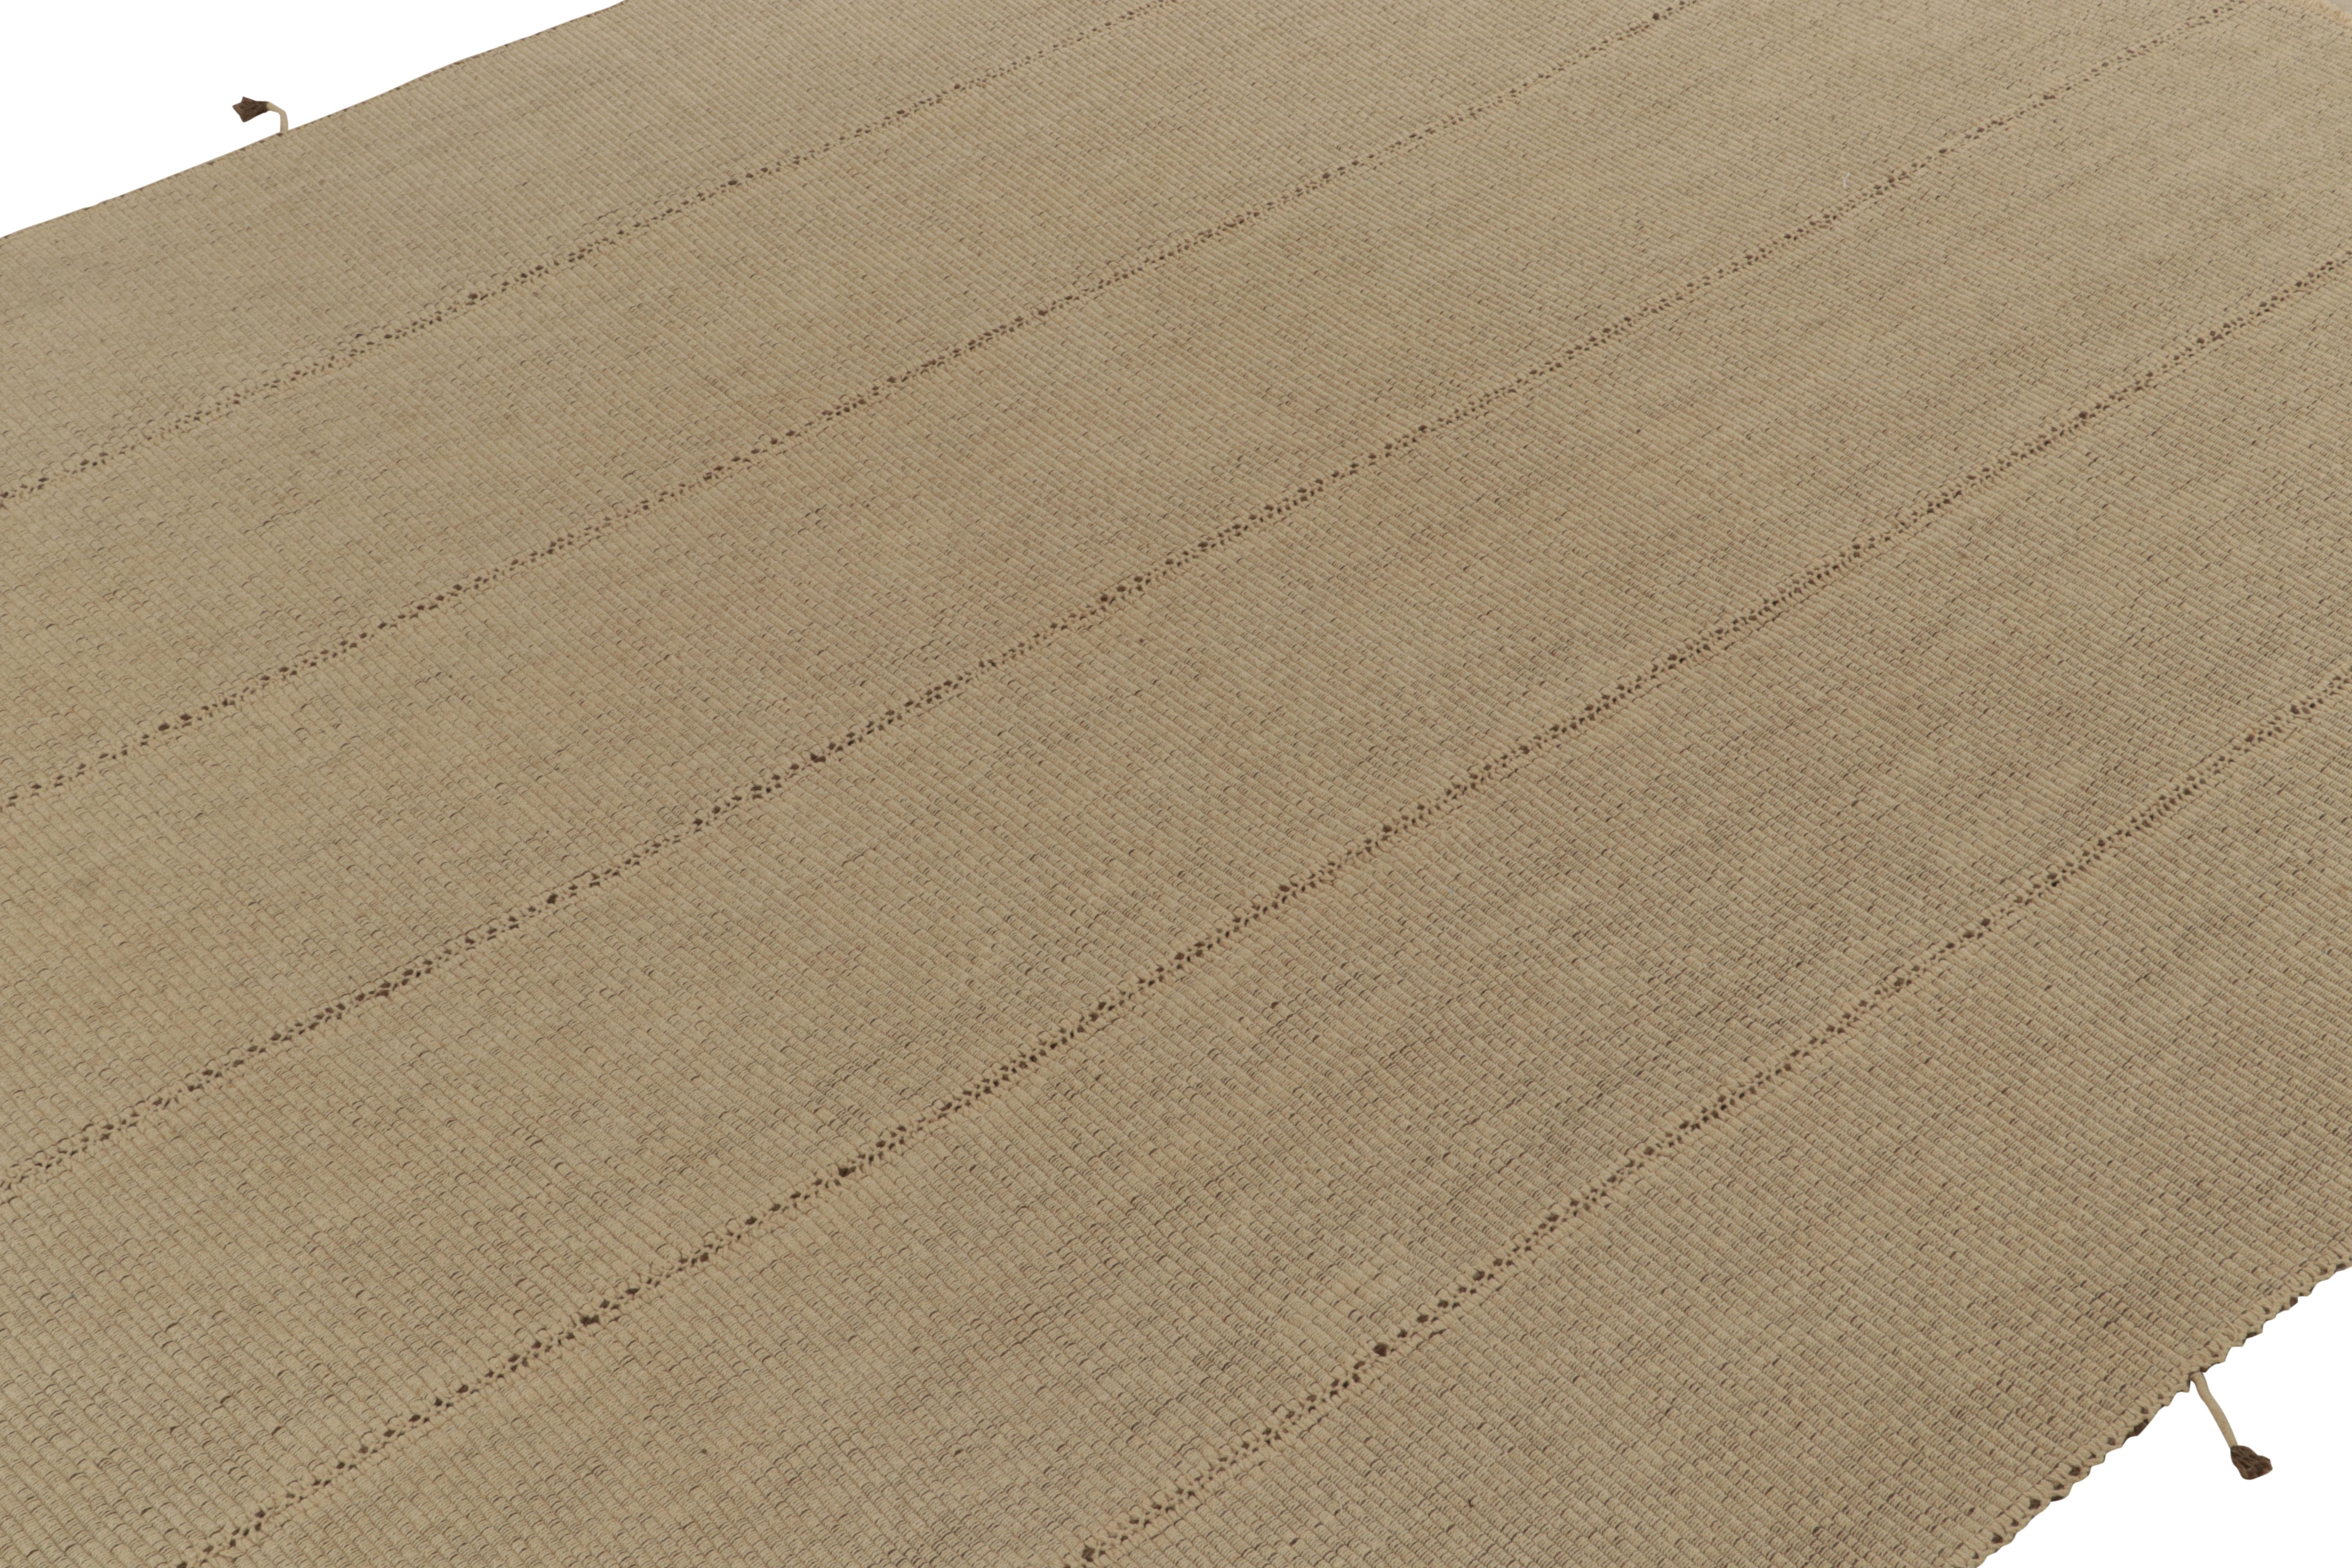 Noué à la main Rug & Kilim's Contemporary Kilim in Sandy, Solid Beige-Brown Panel Woven Style (Kilim contemporain en sable, panneau solide beige-brun) en vente